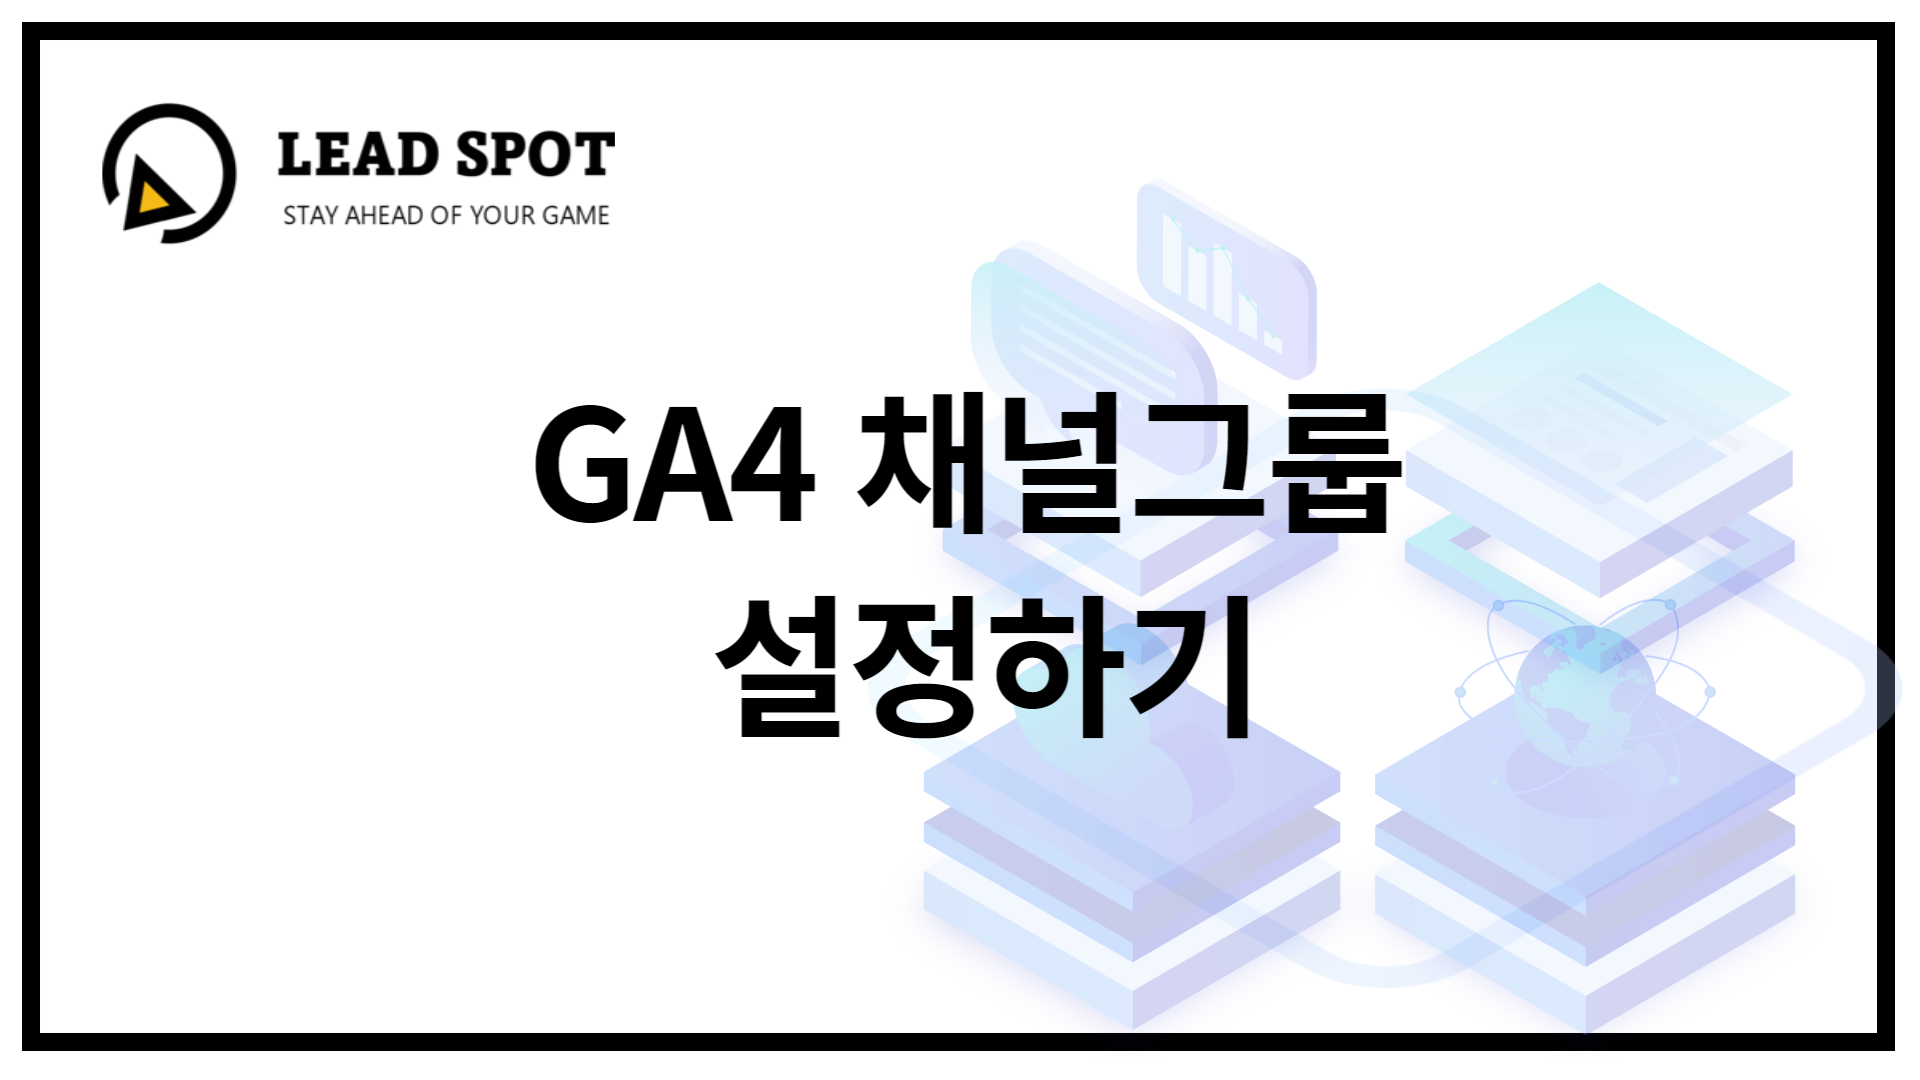 ga4 채널그룹 설정하기